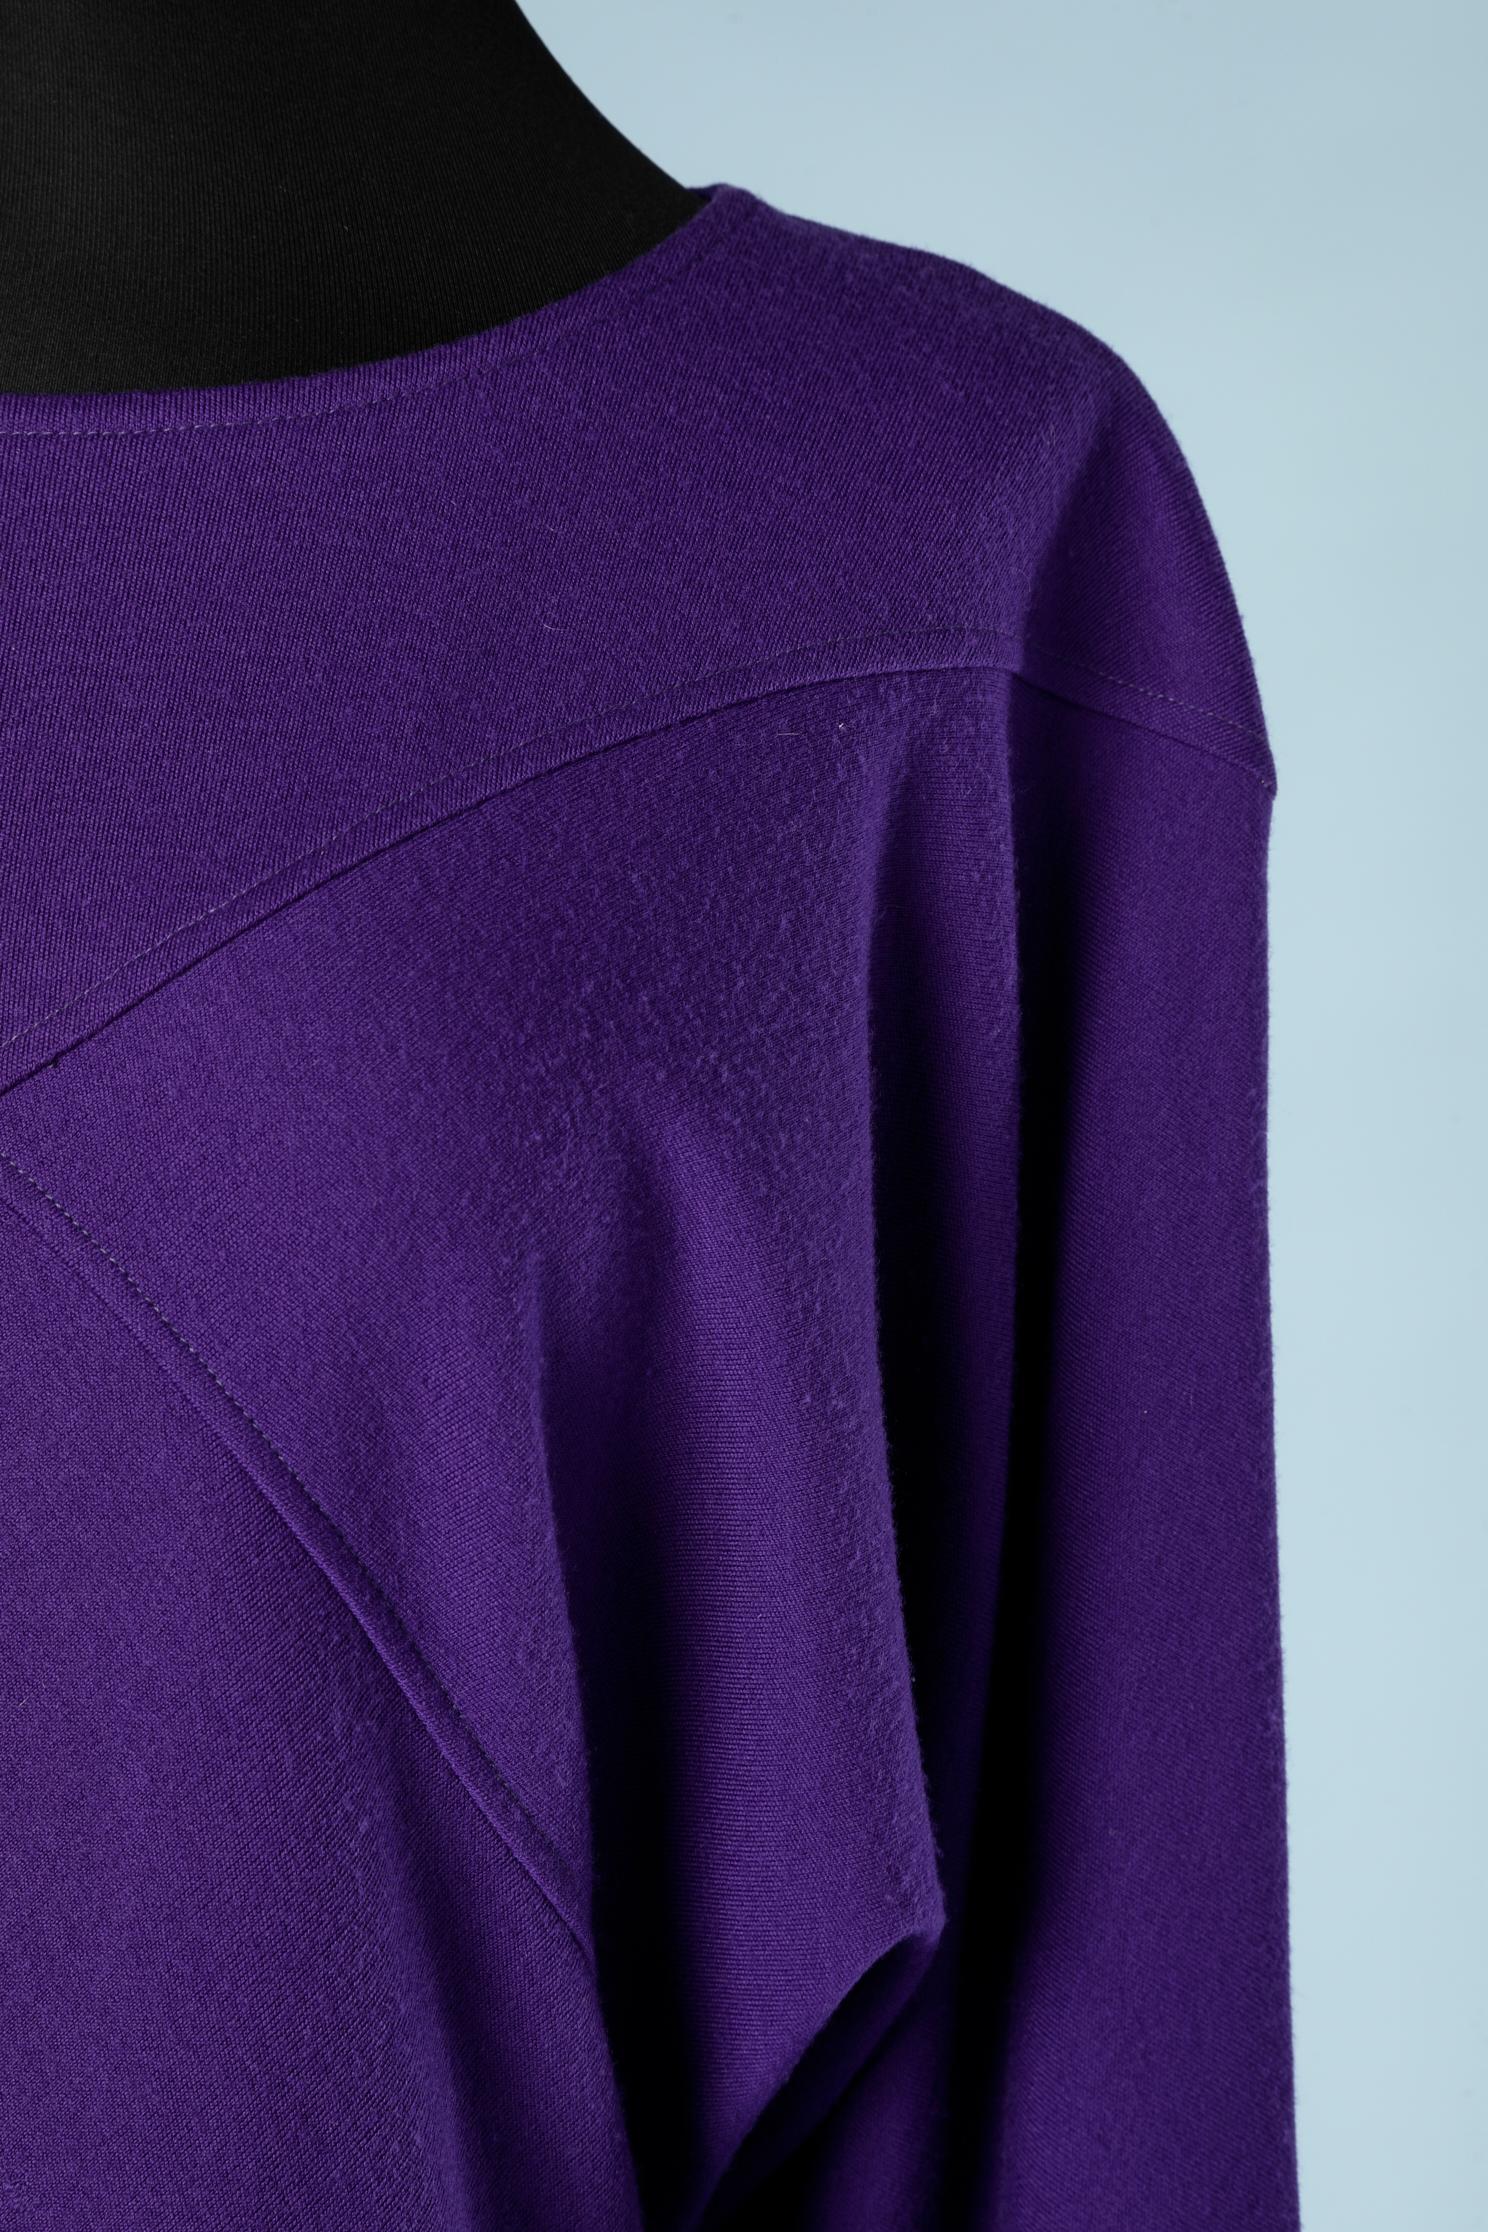 Wool jersey purple dress with cut-work.
SIZE L